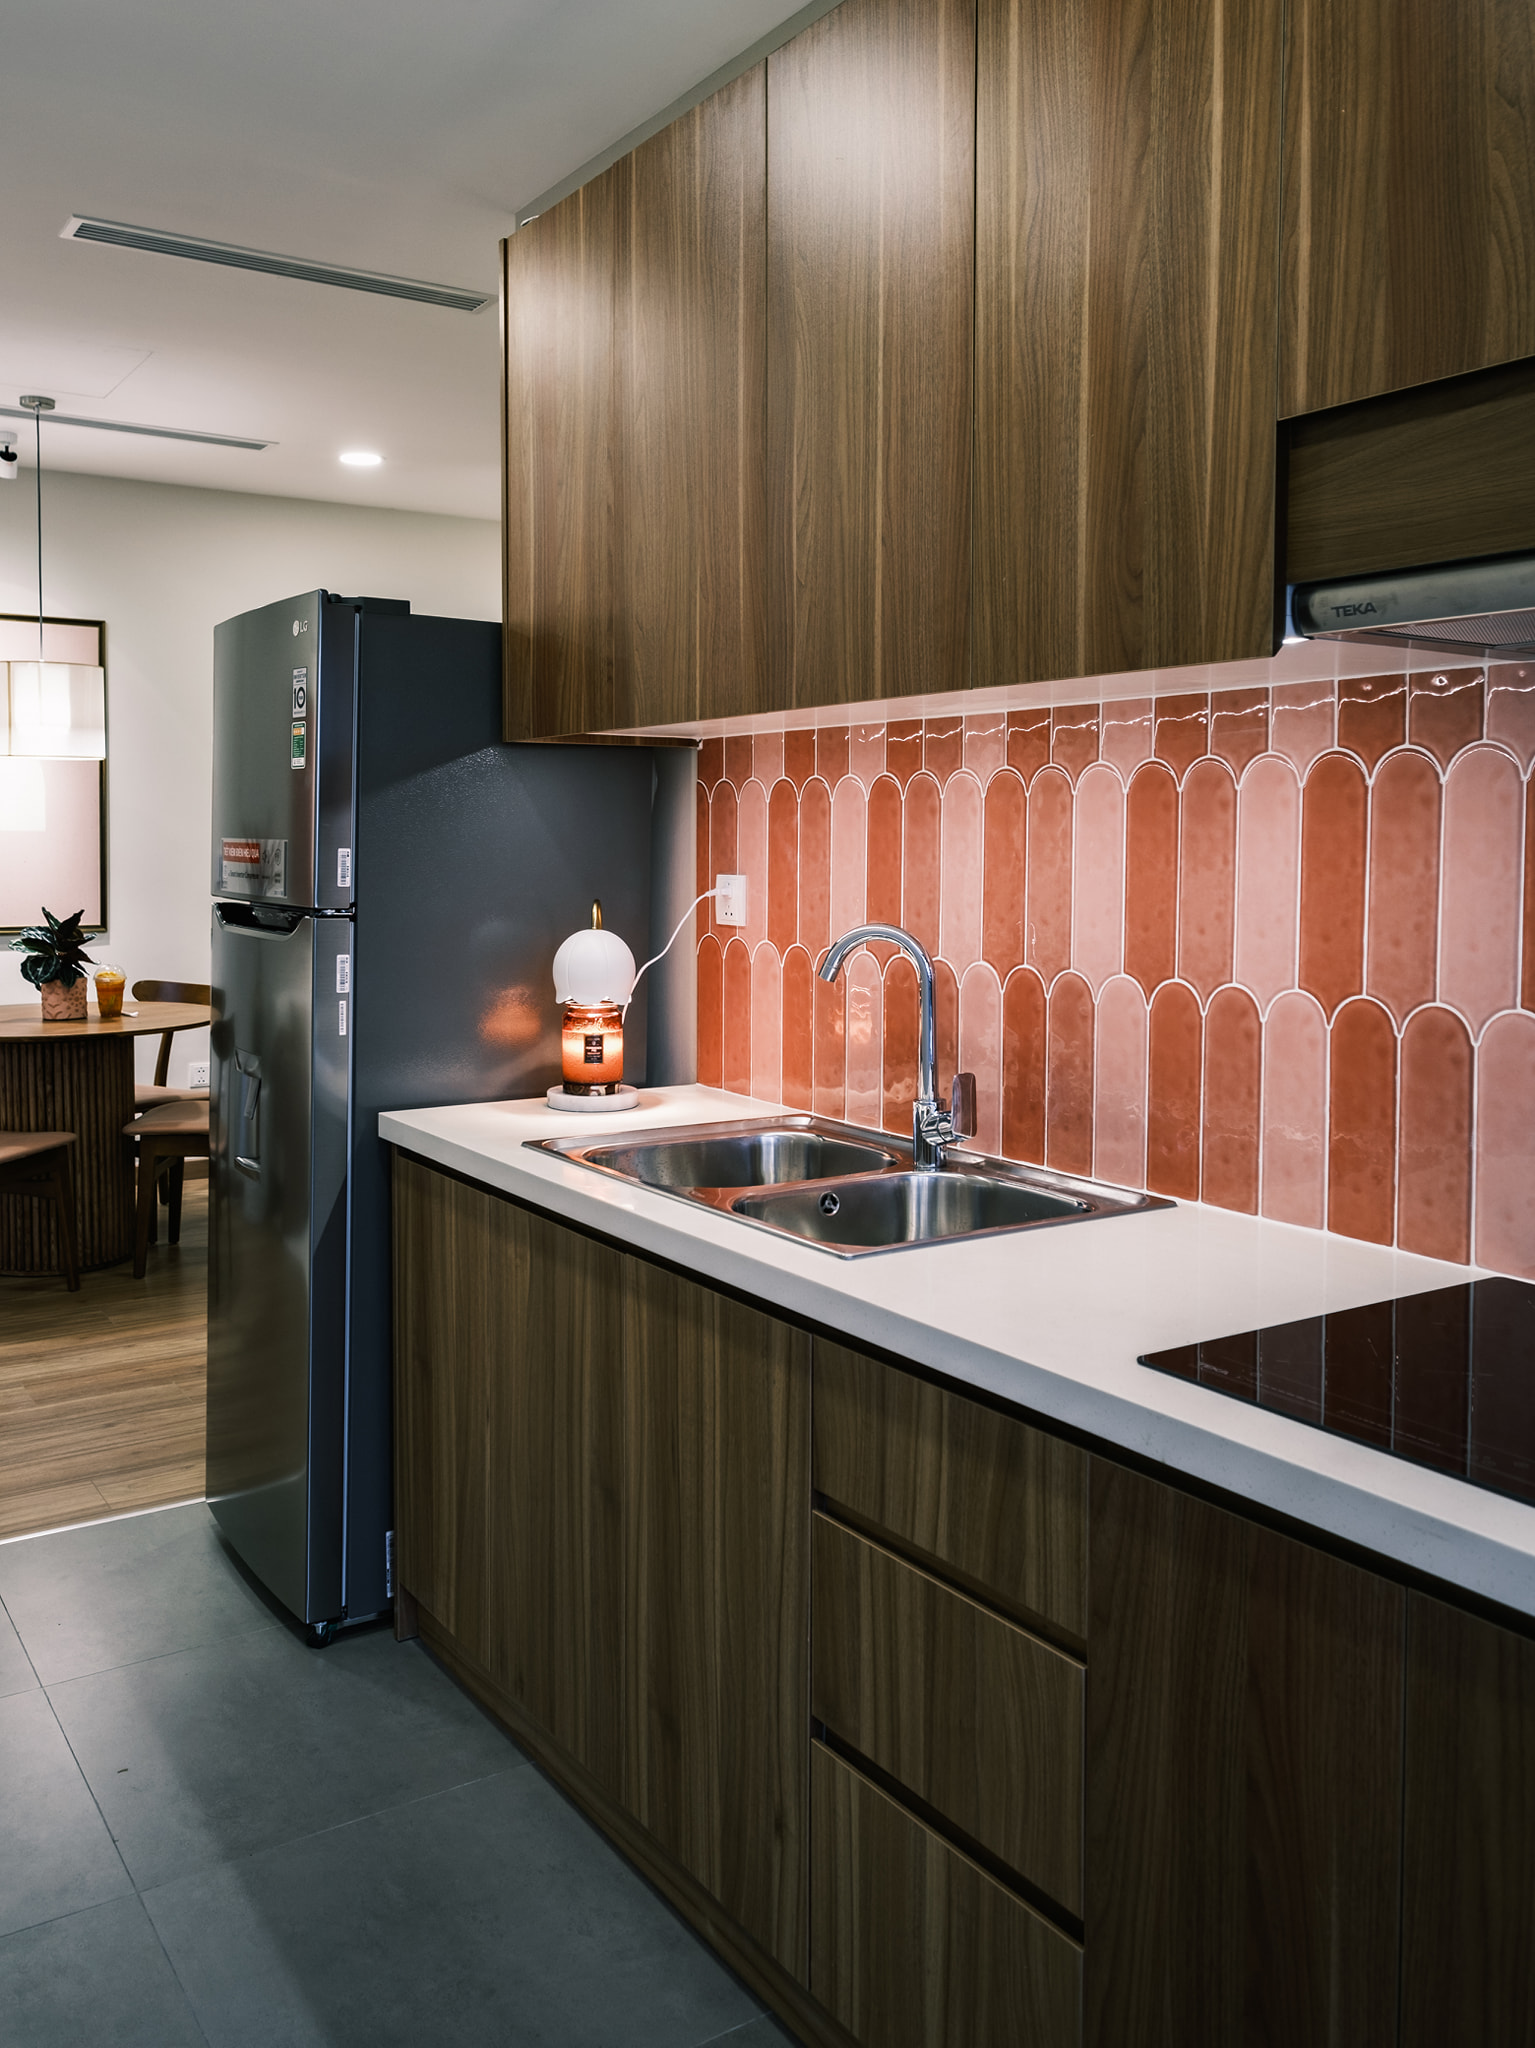 Phòng bếp lát sàn gạch vừa phân vùng với phòng khách - phòng ăn, vừa dễ dàng vệ sinh cho khu vực nấu nướng. Hệ thống tủ lưu trữ gỗ vừa tiện nghi vừa bền đẹp.